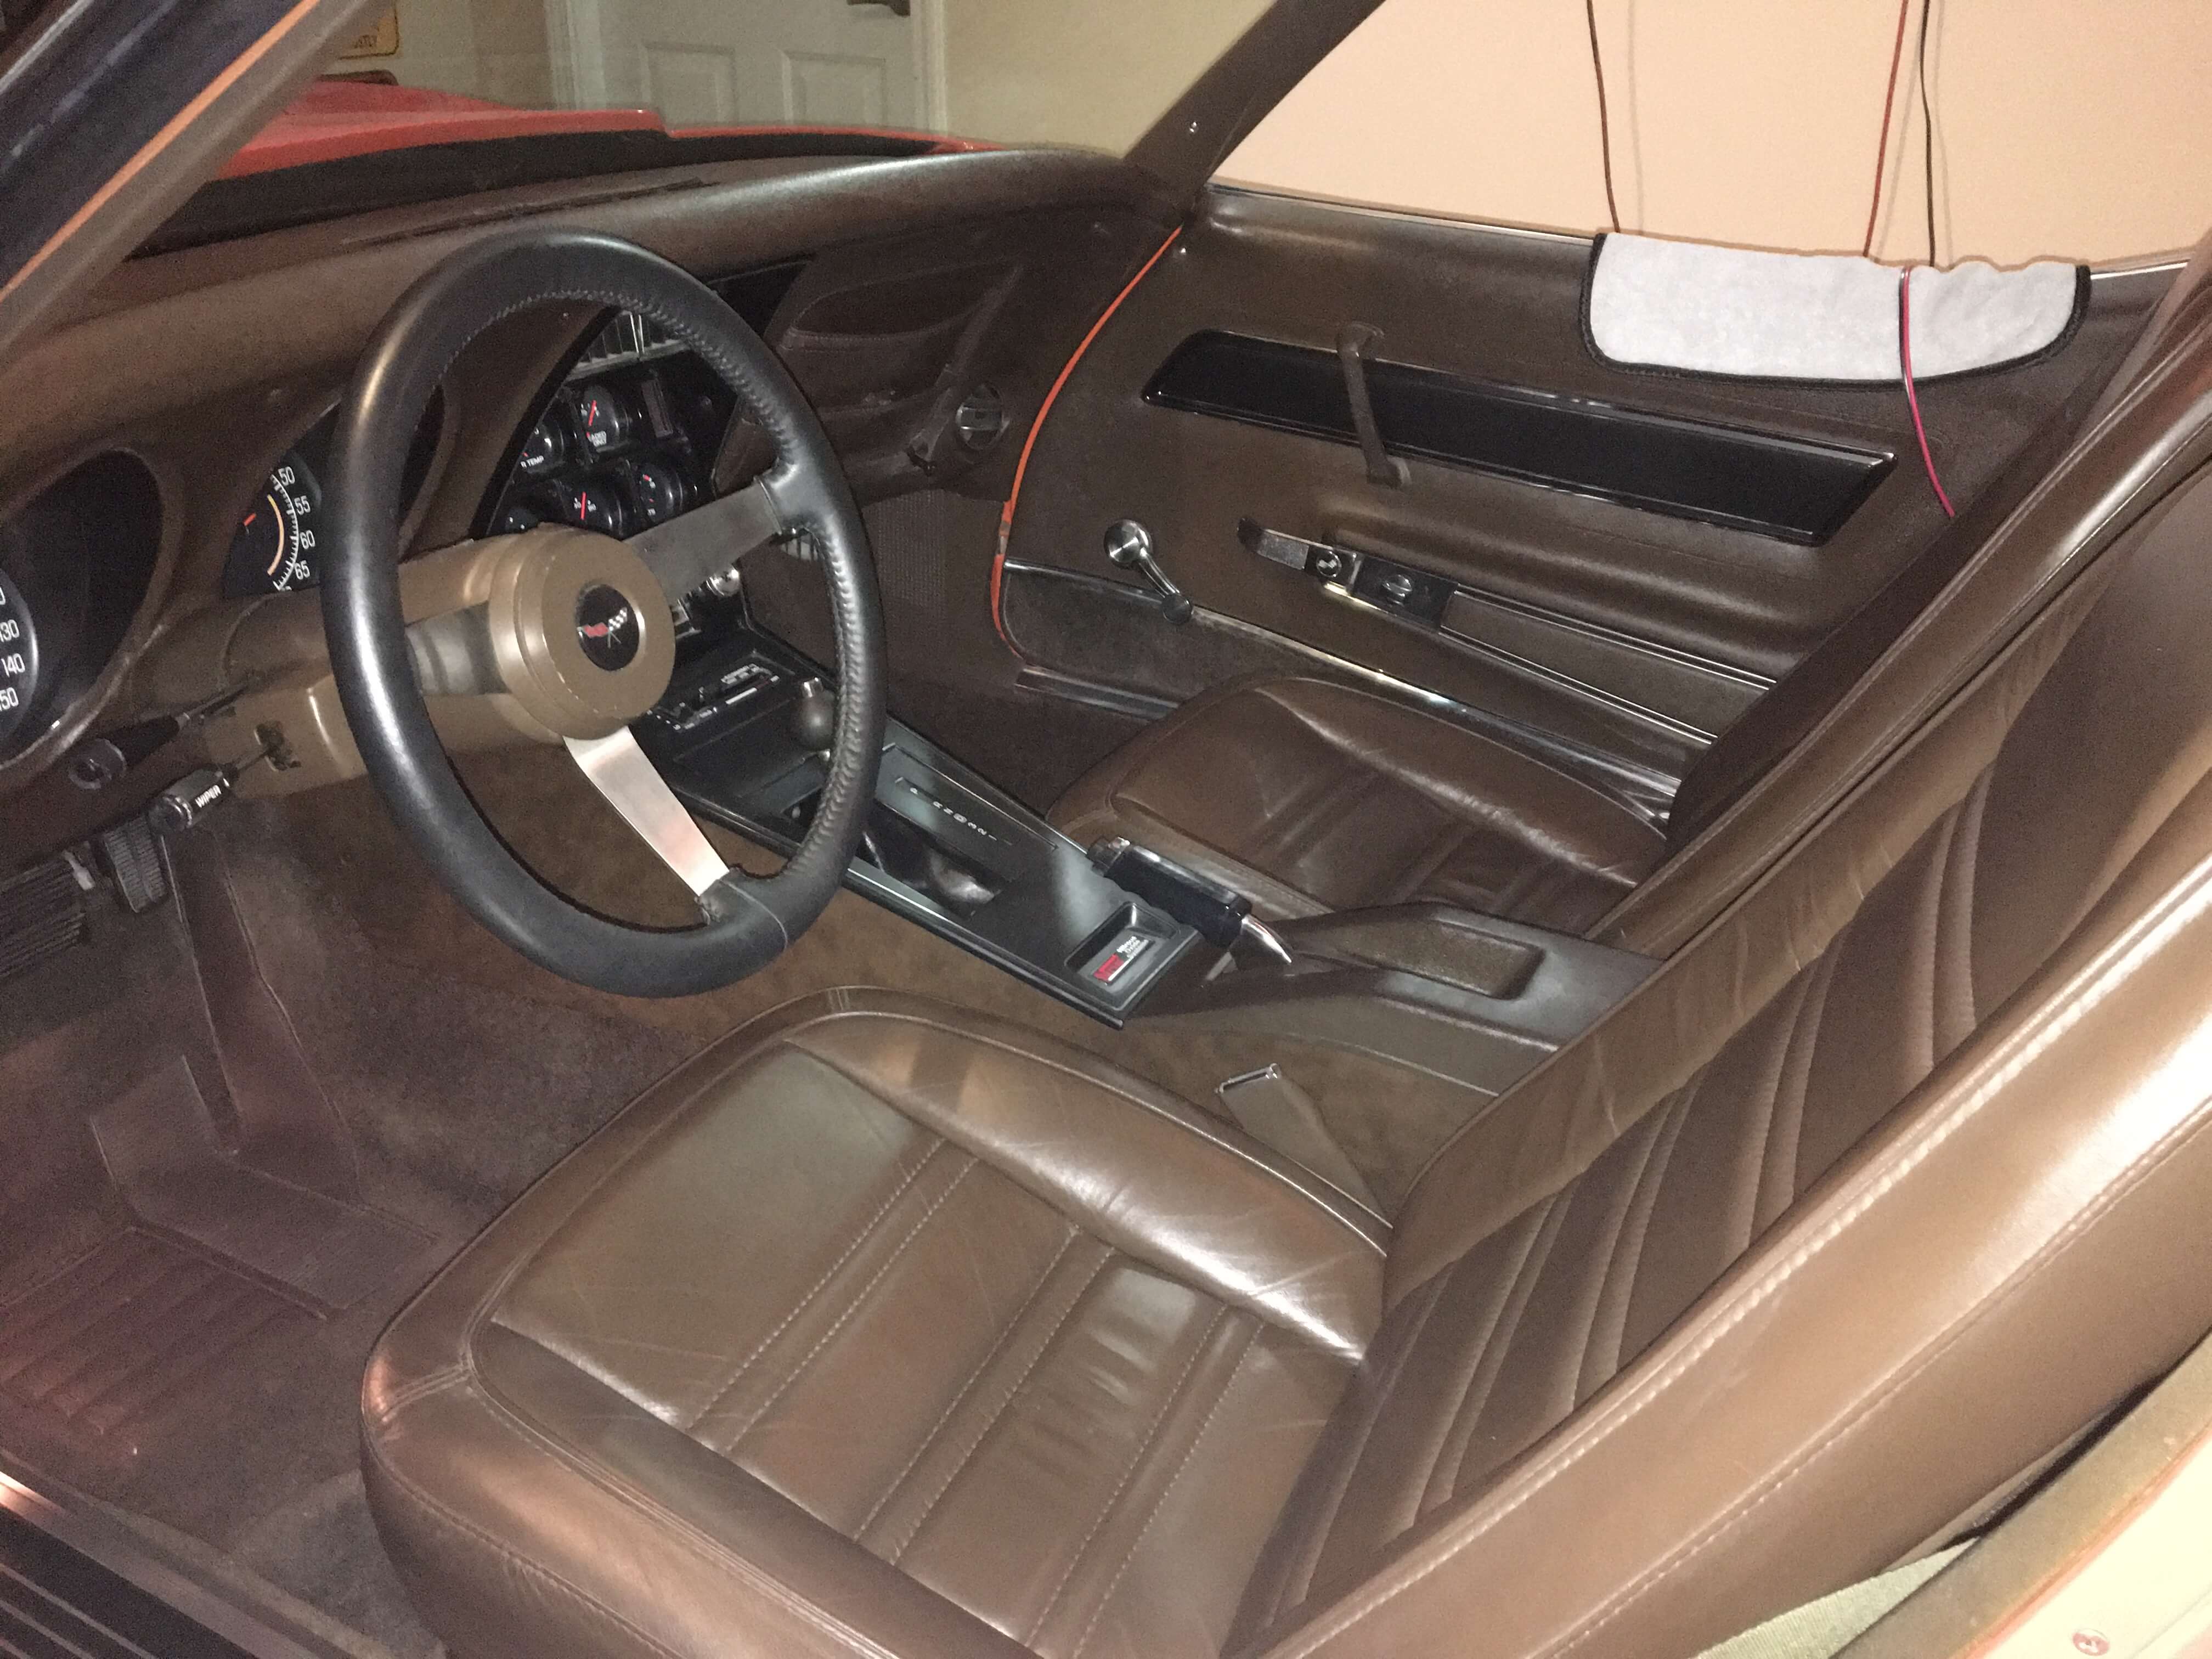 Interior - 1977 Chevrolet Corvette - Holley My Garage